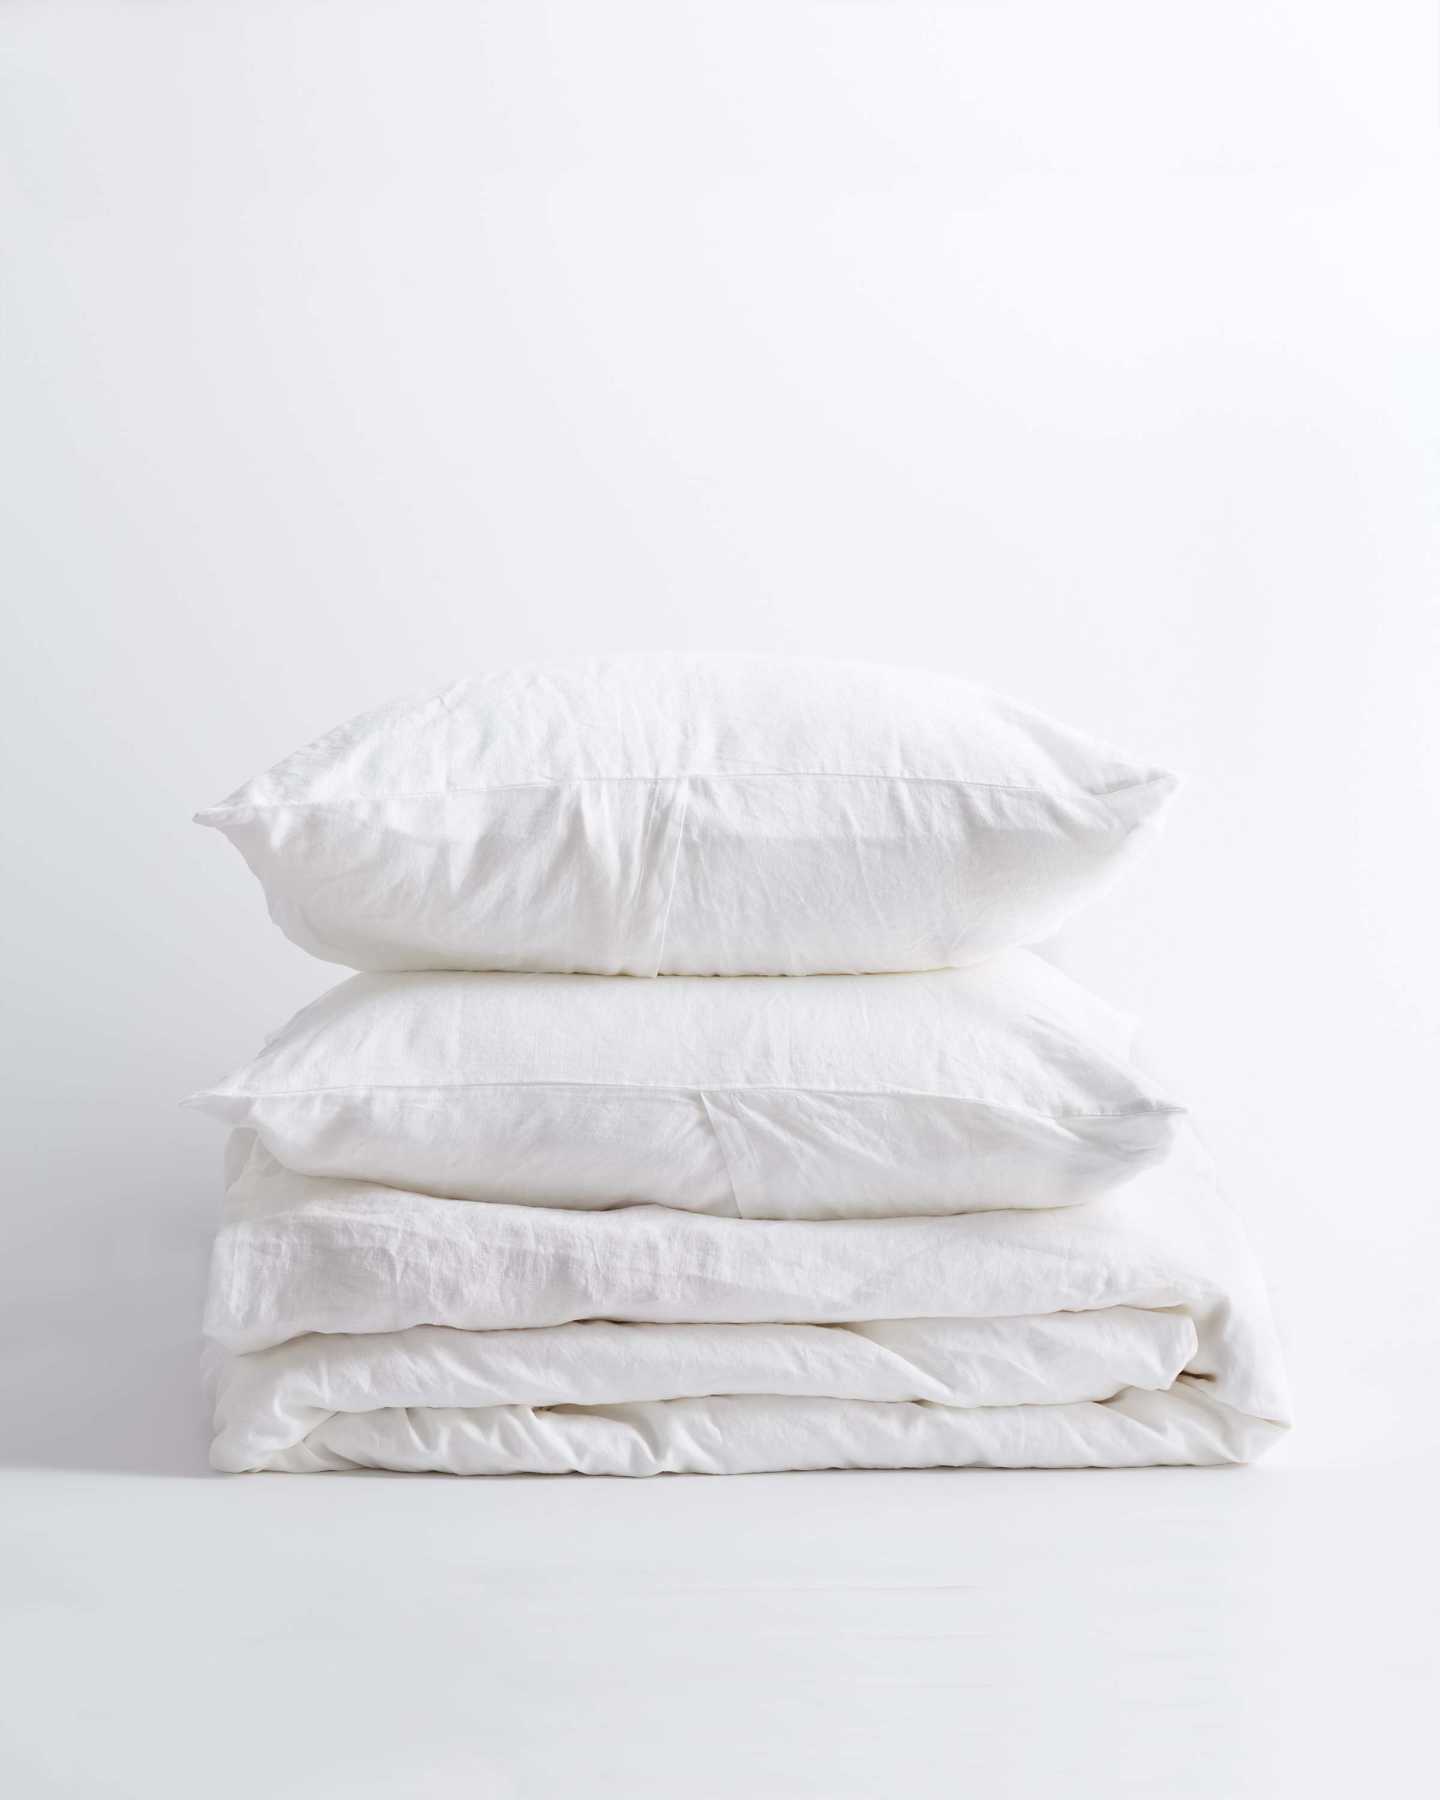 You May Also Like - European Linen Duvet Cover Set - White